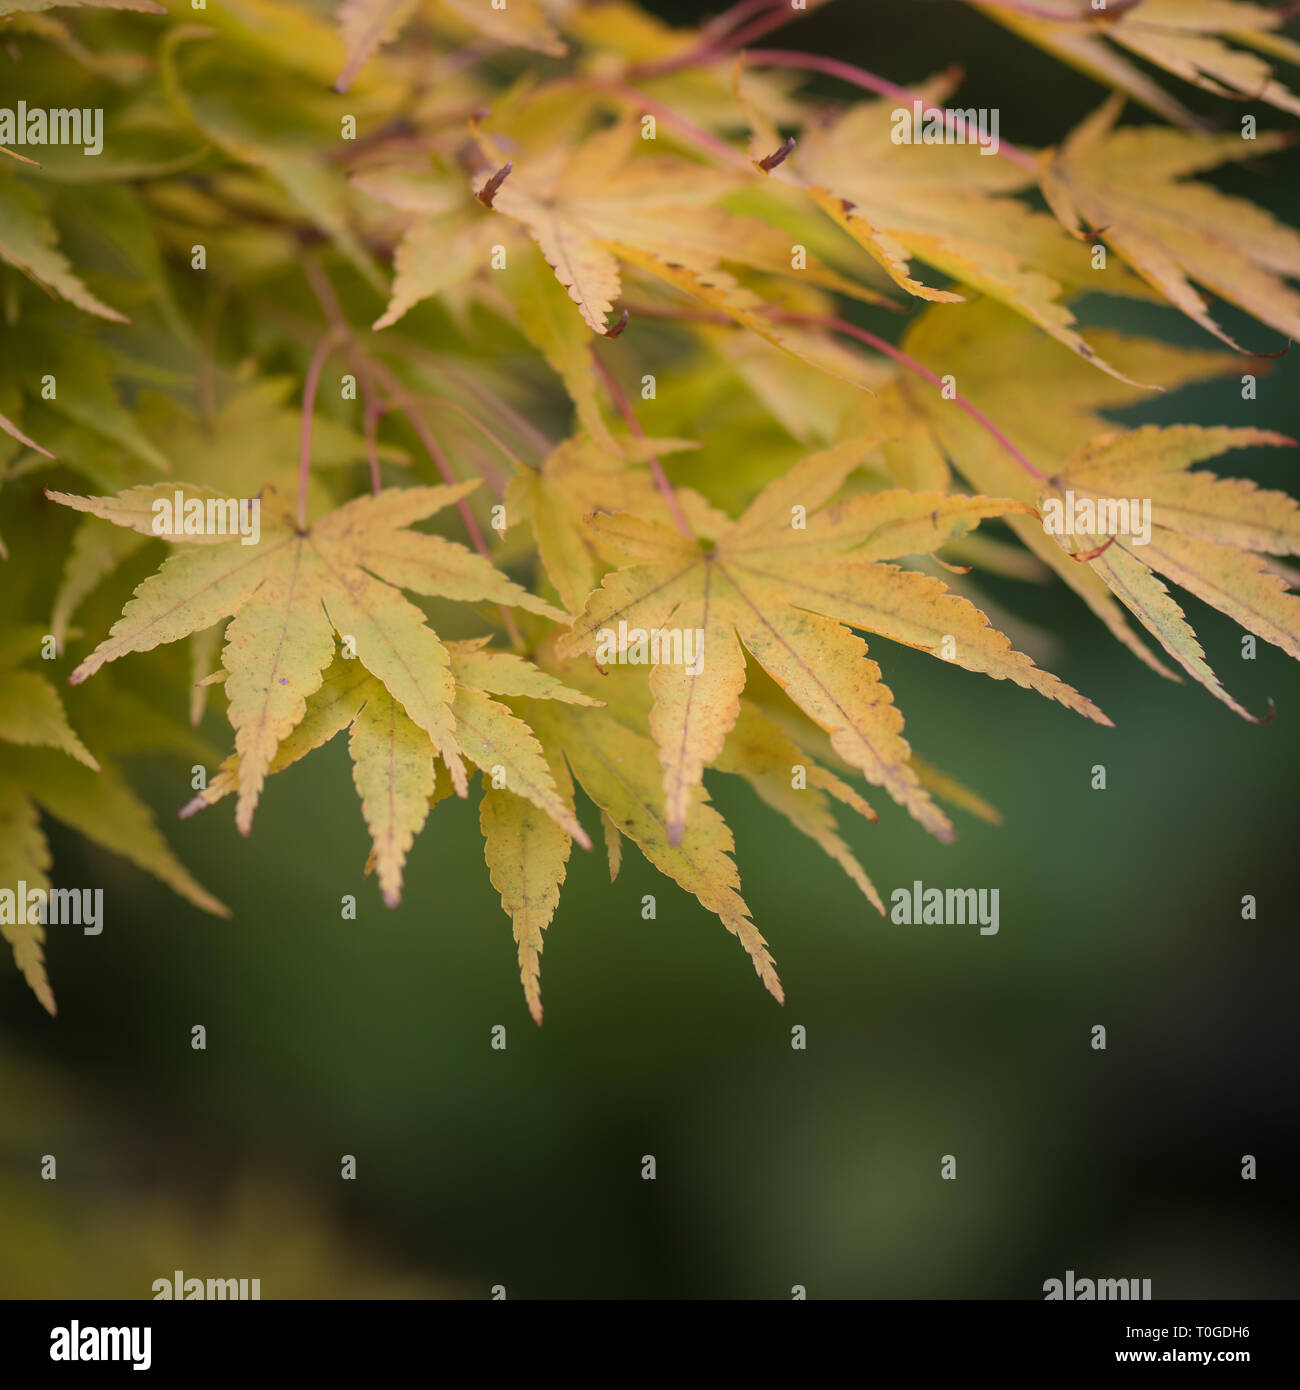 Japanese maple, Acer palmatum 'Sango-kaku' in its autumn foliage photographed at Wakehurst Wild Botanic Gardens in England Stock Photo